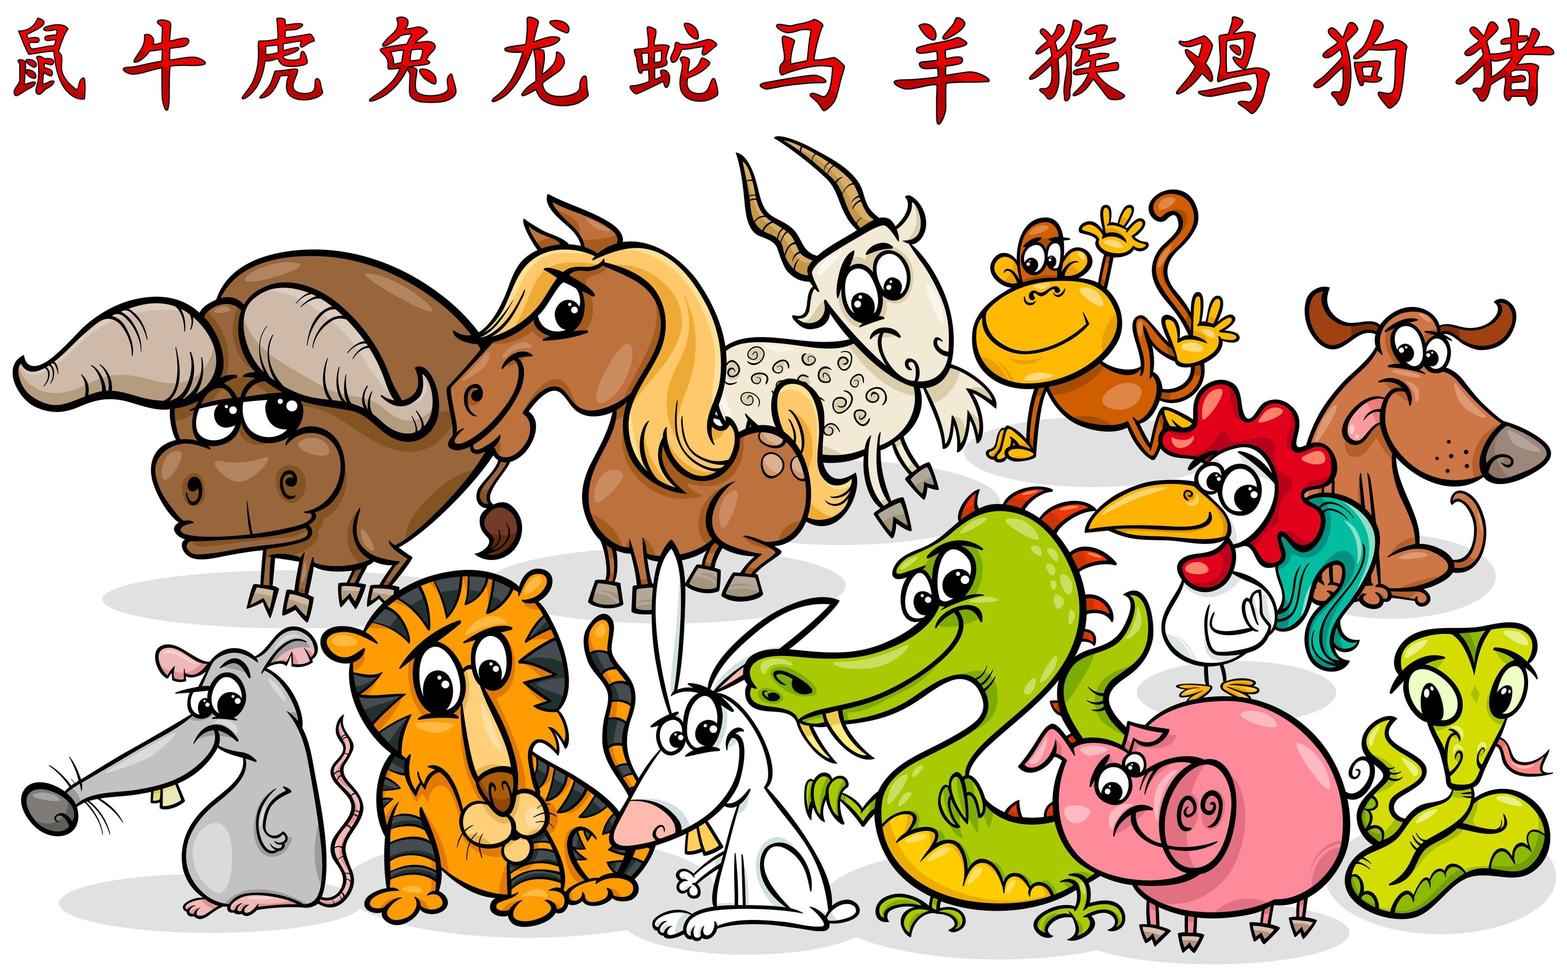 Cartoon chinesische Sternzeichen Horoskop Zeichen Sammlung vektor